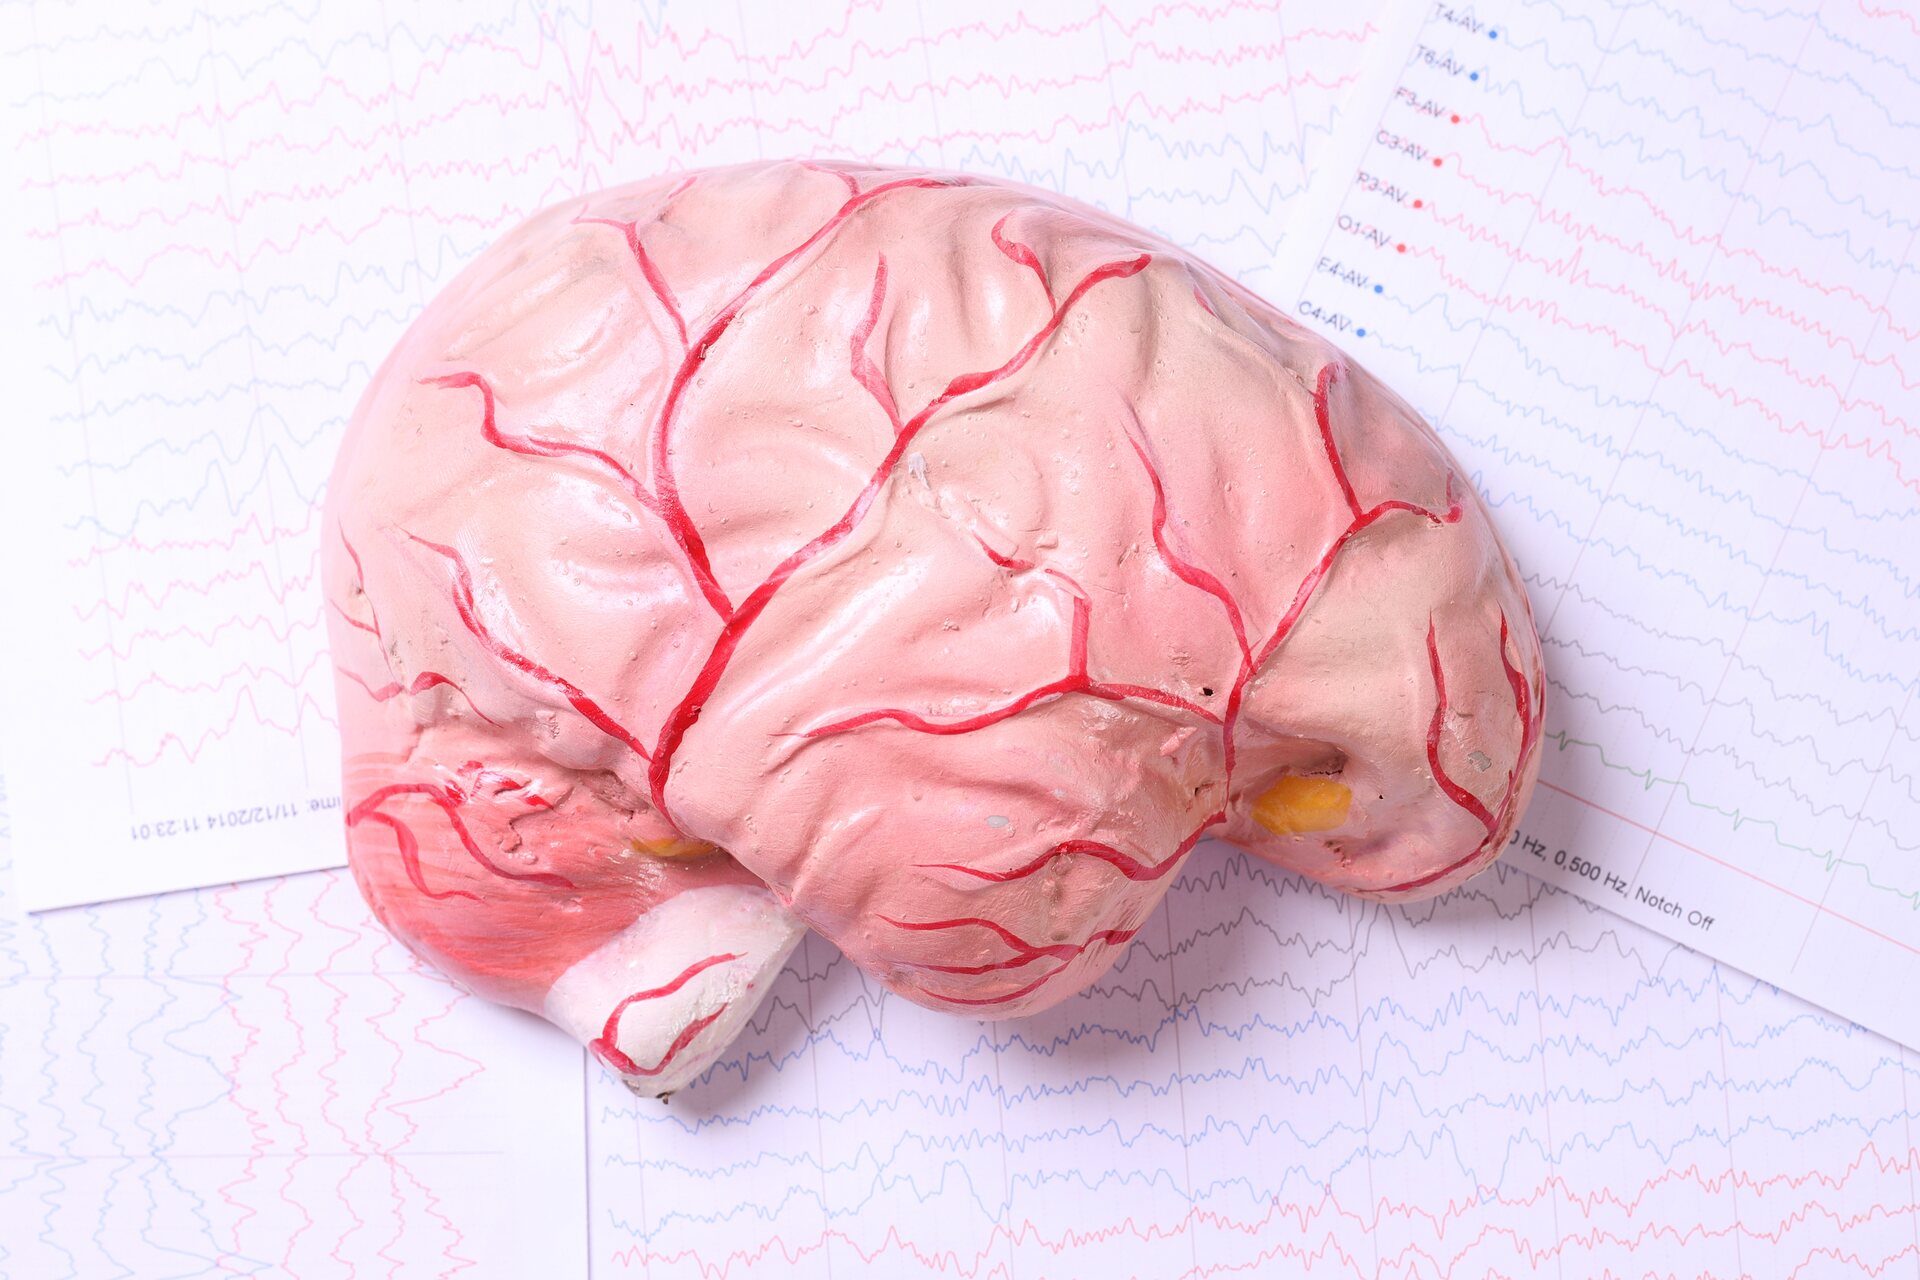 Cervello umano: il cervello è l'organo principale del sistema nervoso centrale di un animale ed è parte dell’encefalo